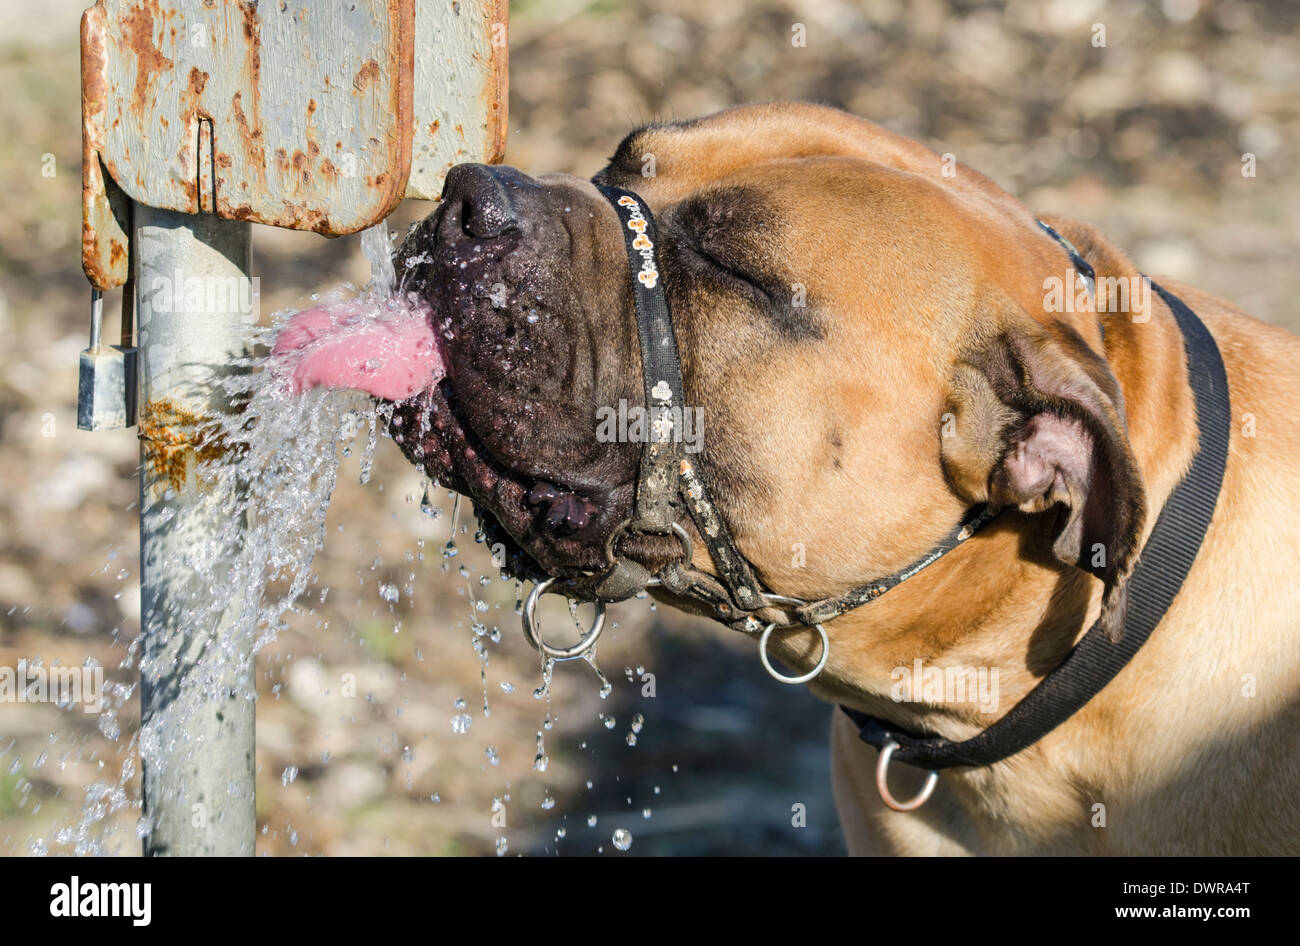 Bulldog trinkt und lappt Wasser aus einem Außenhahn, mit seiner Zunge bedeckt mit Wasserspritzern. Hund trinkt aus dem Wasserhahn im Freien. Stockfoto